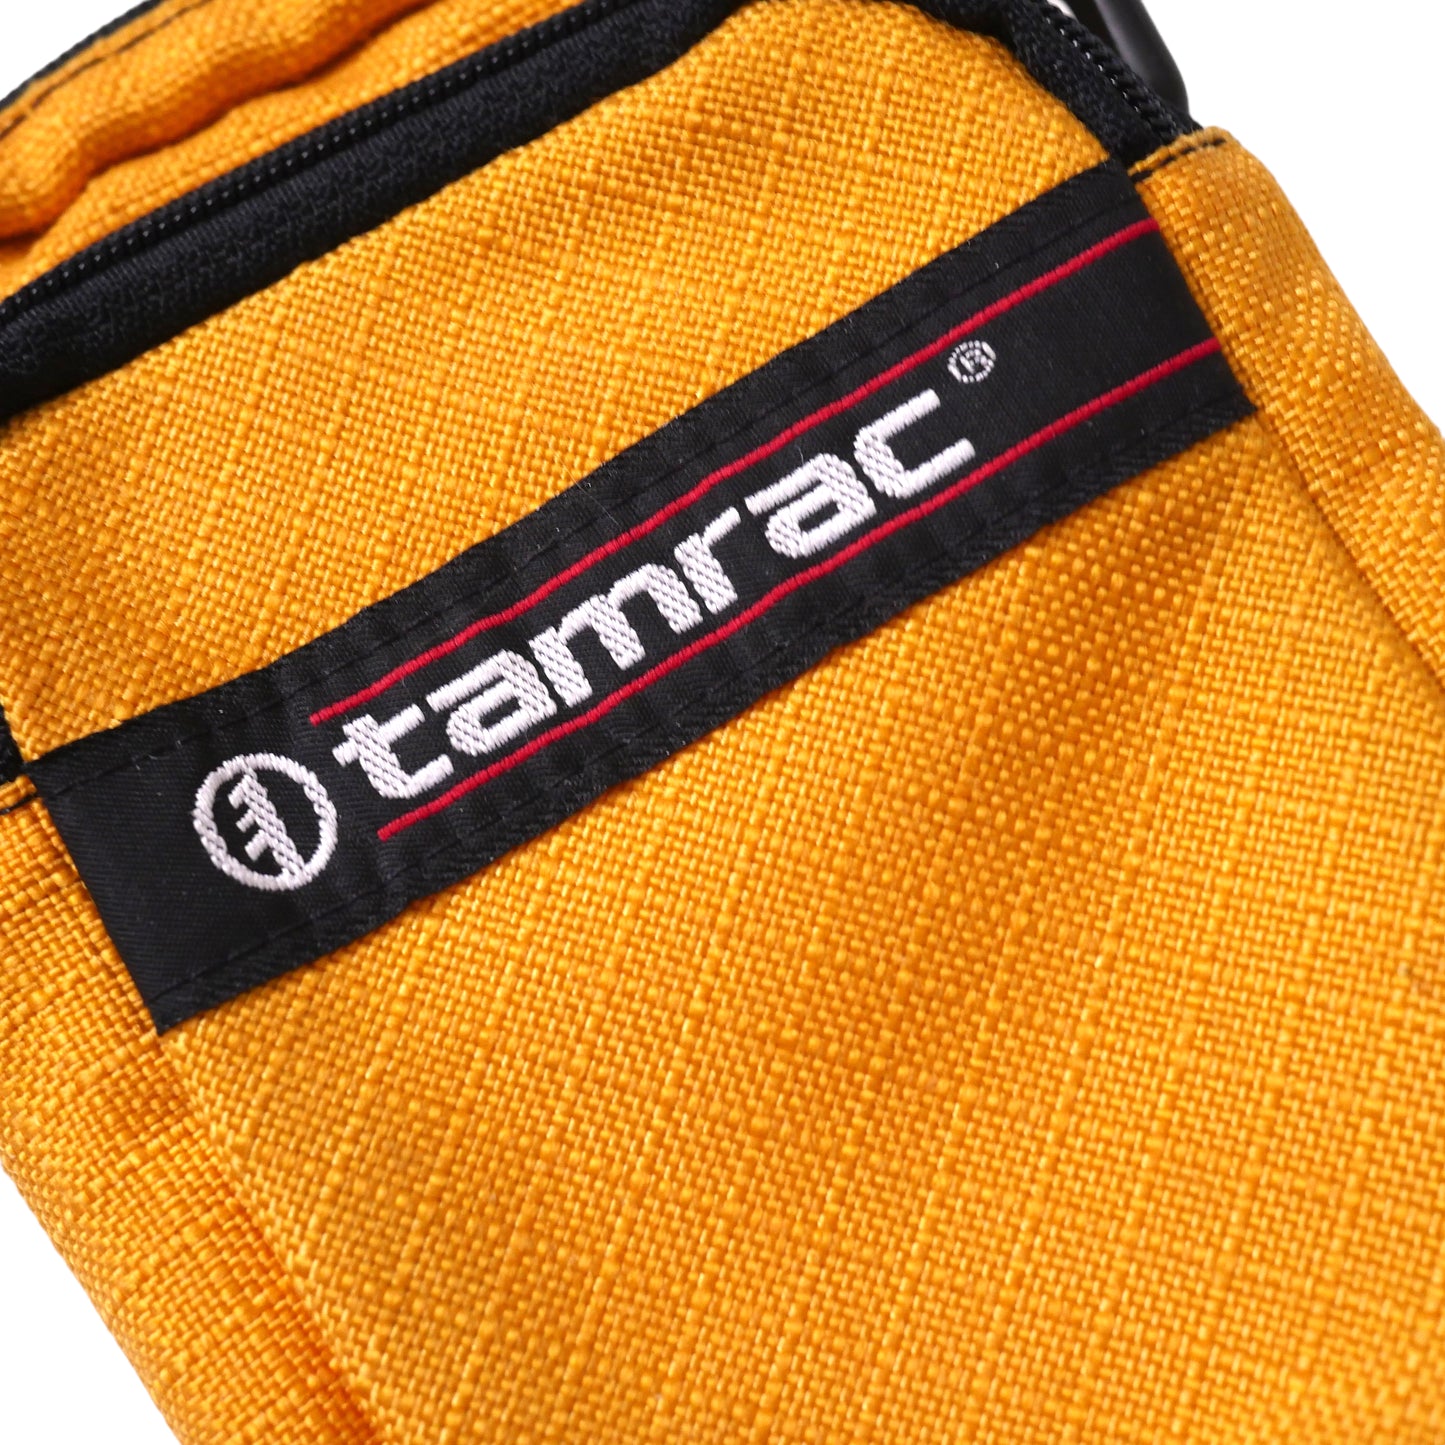 Tamrac Camera Bag - Yellow